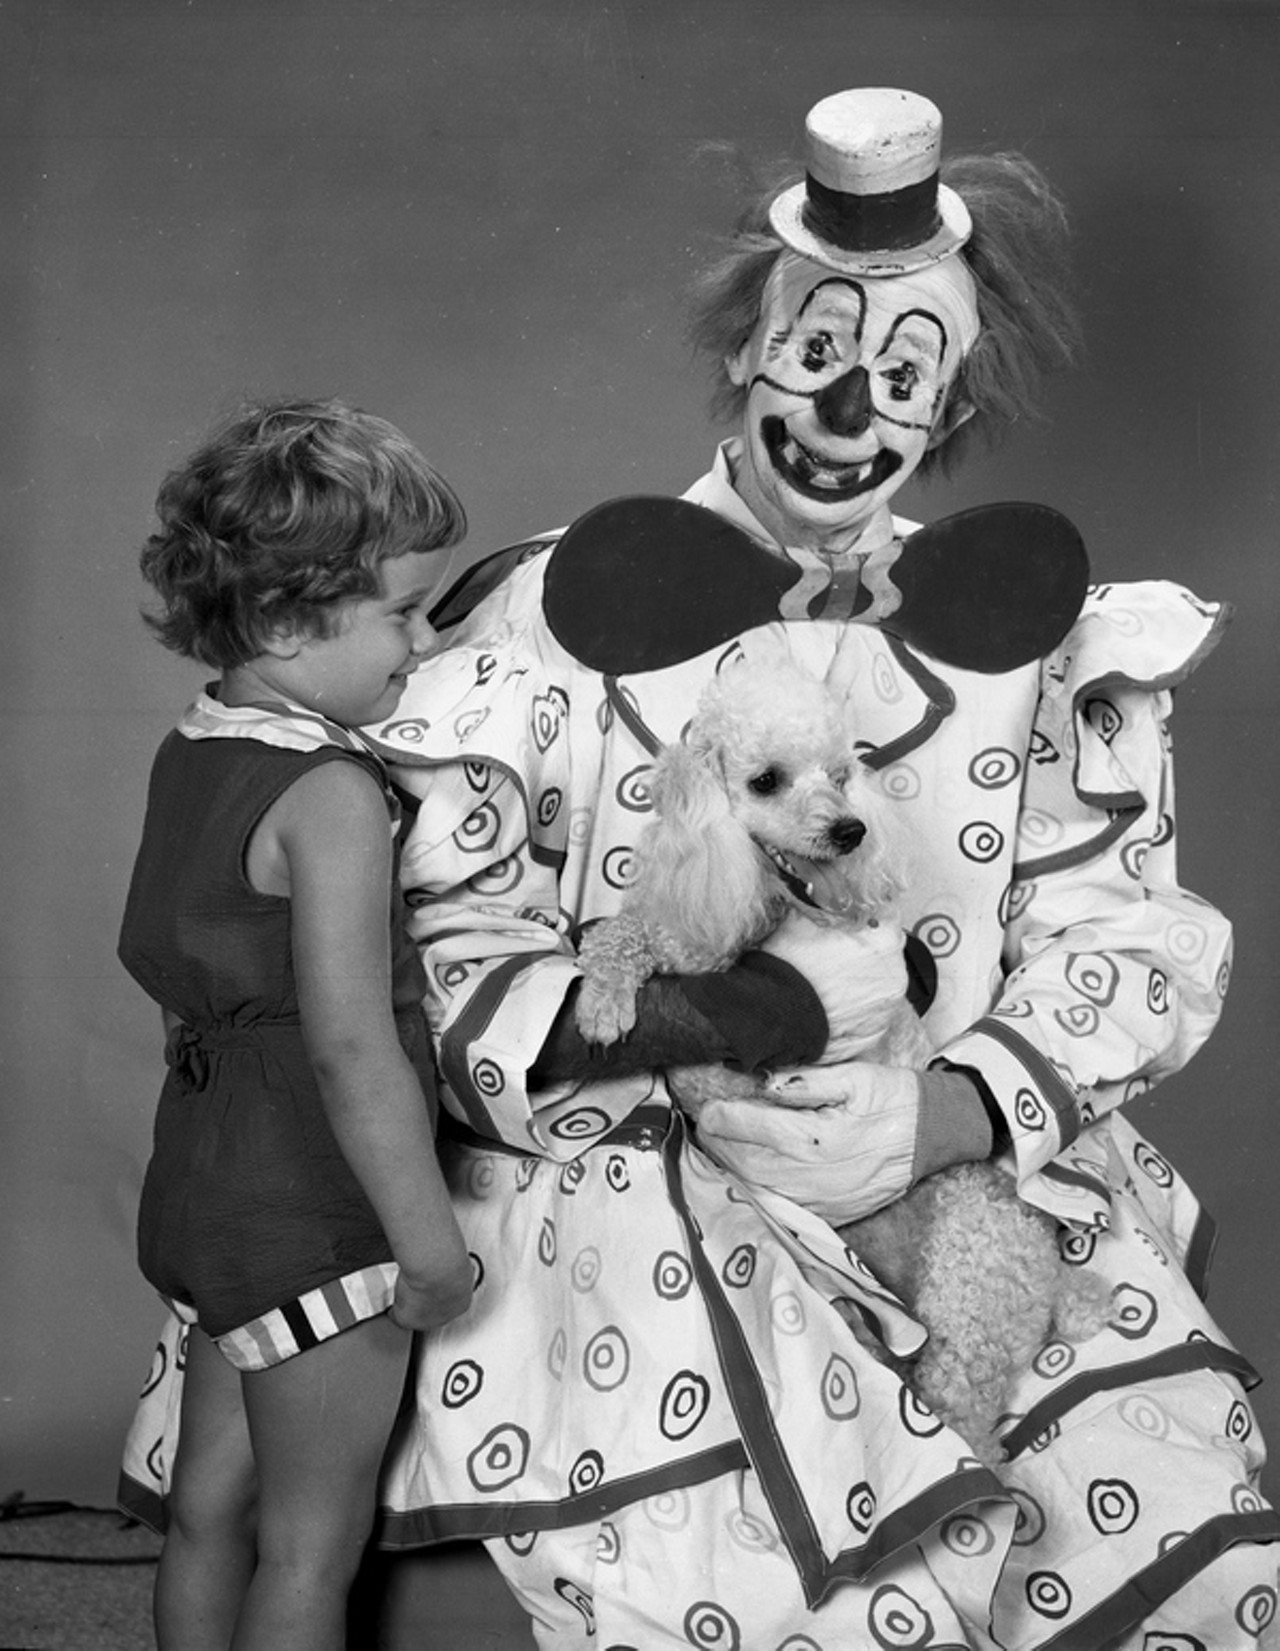 Clown Paul Jerome circa 1960 (via floridamemory.com)